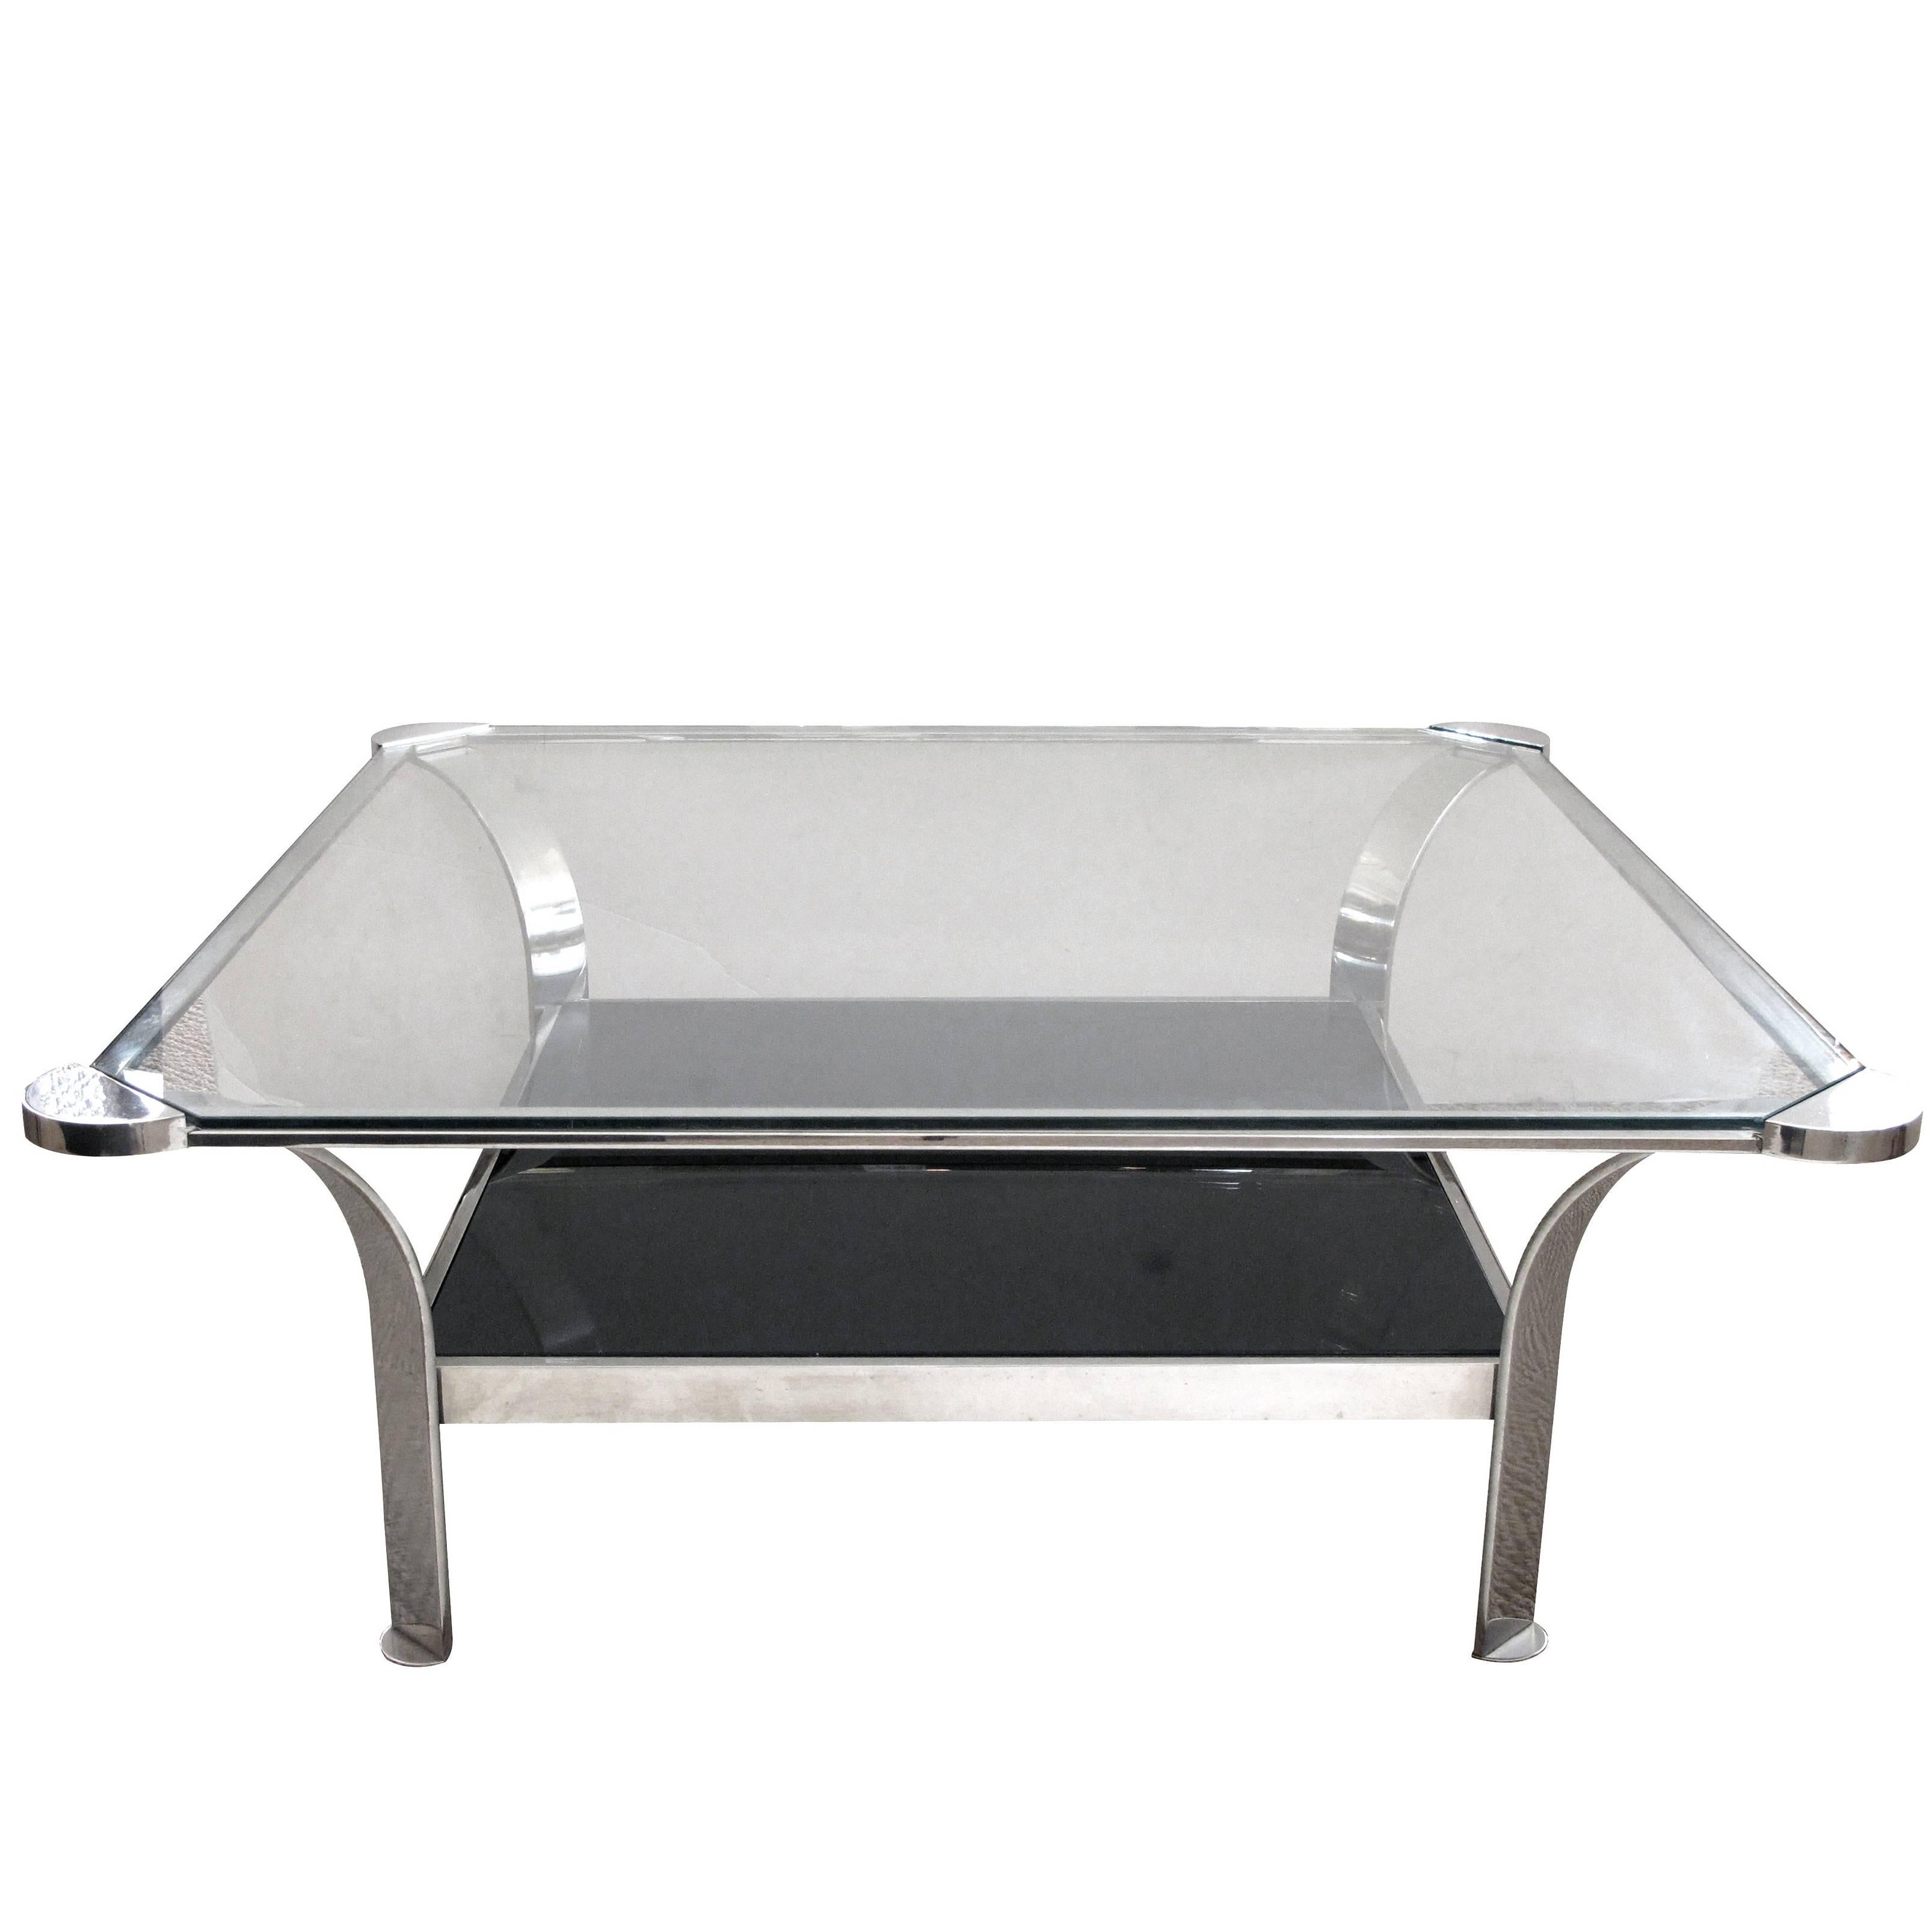 Grande table basse française en acier avec plateau en verre transparent et étagère inférieure en verre noir